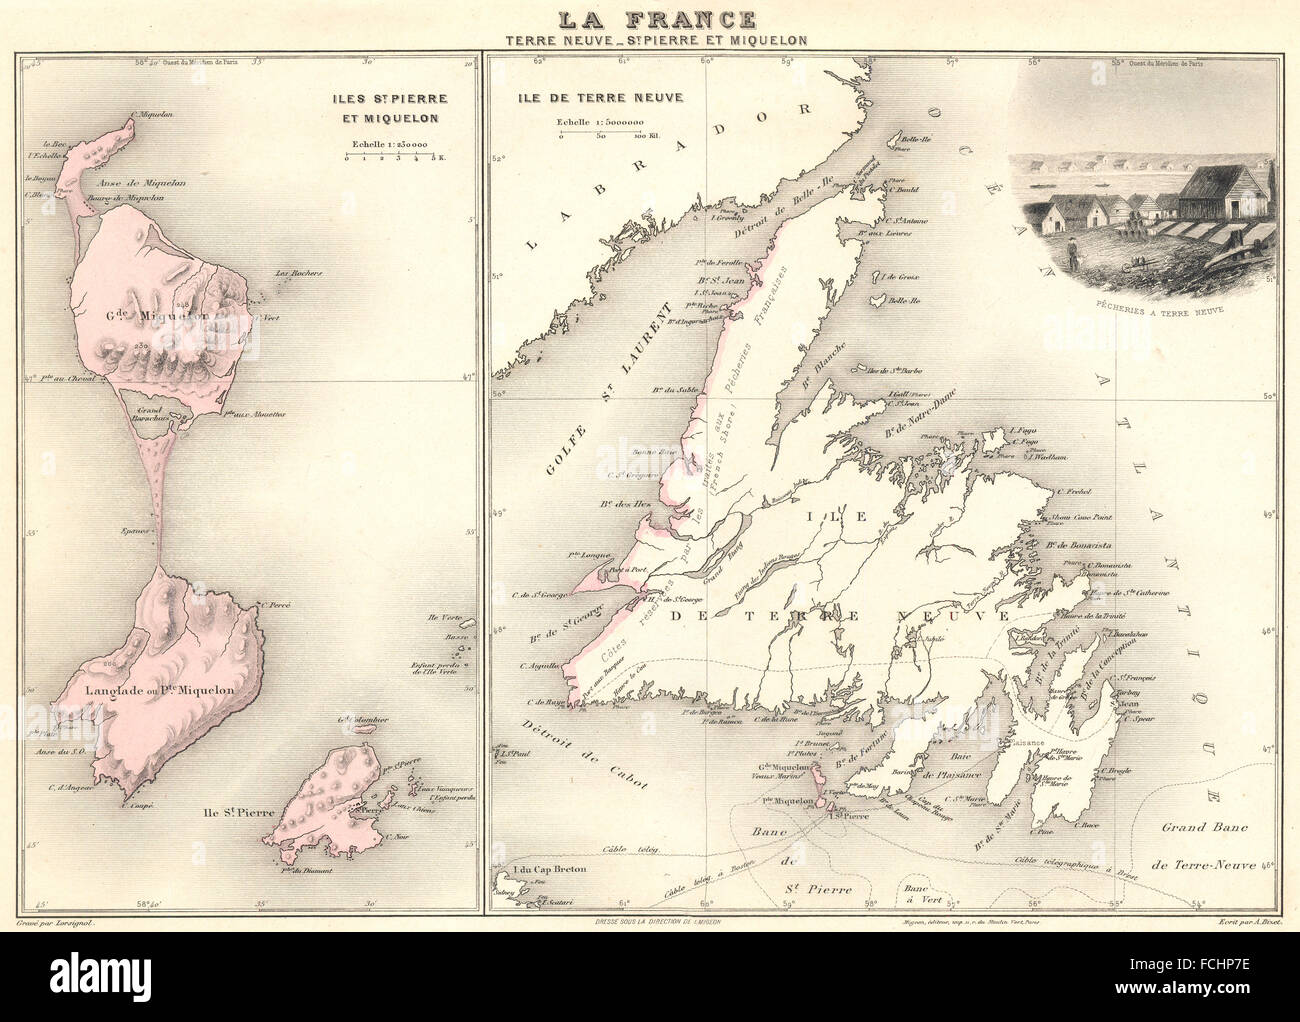 ATLANTIC OCEAN: Terre Neuve-St Pierre et Miquelon. Vuillemin., 1903 old map Stock Photo